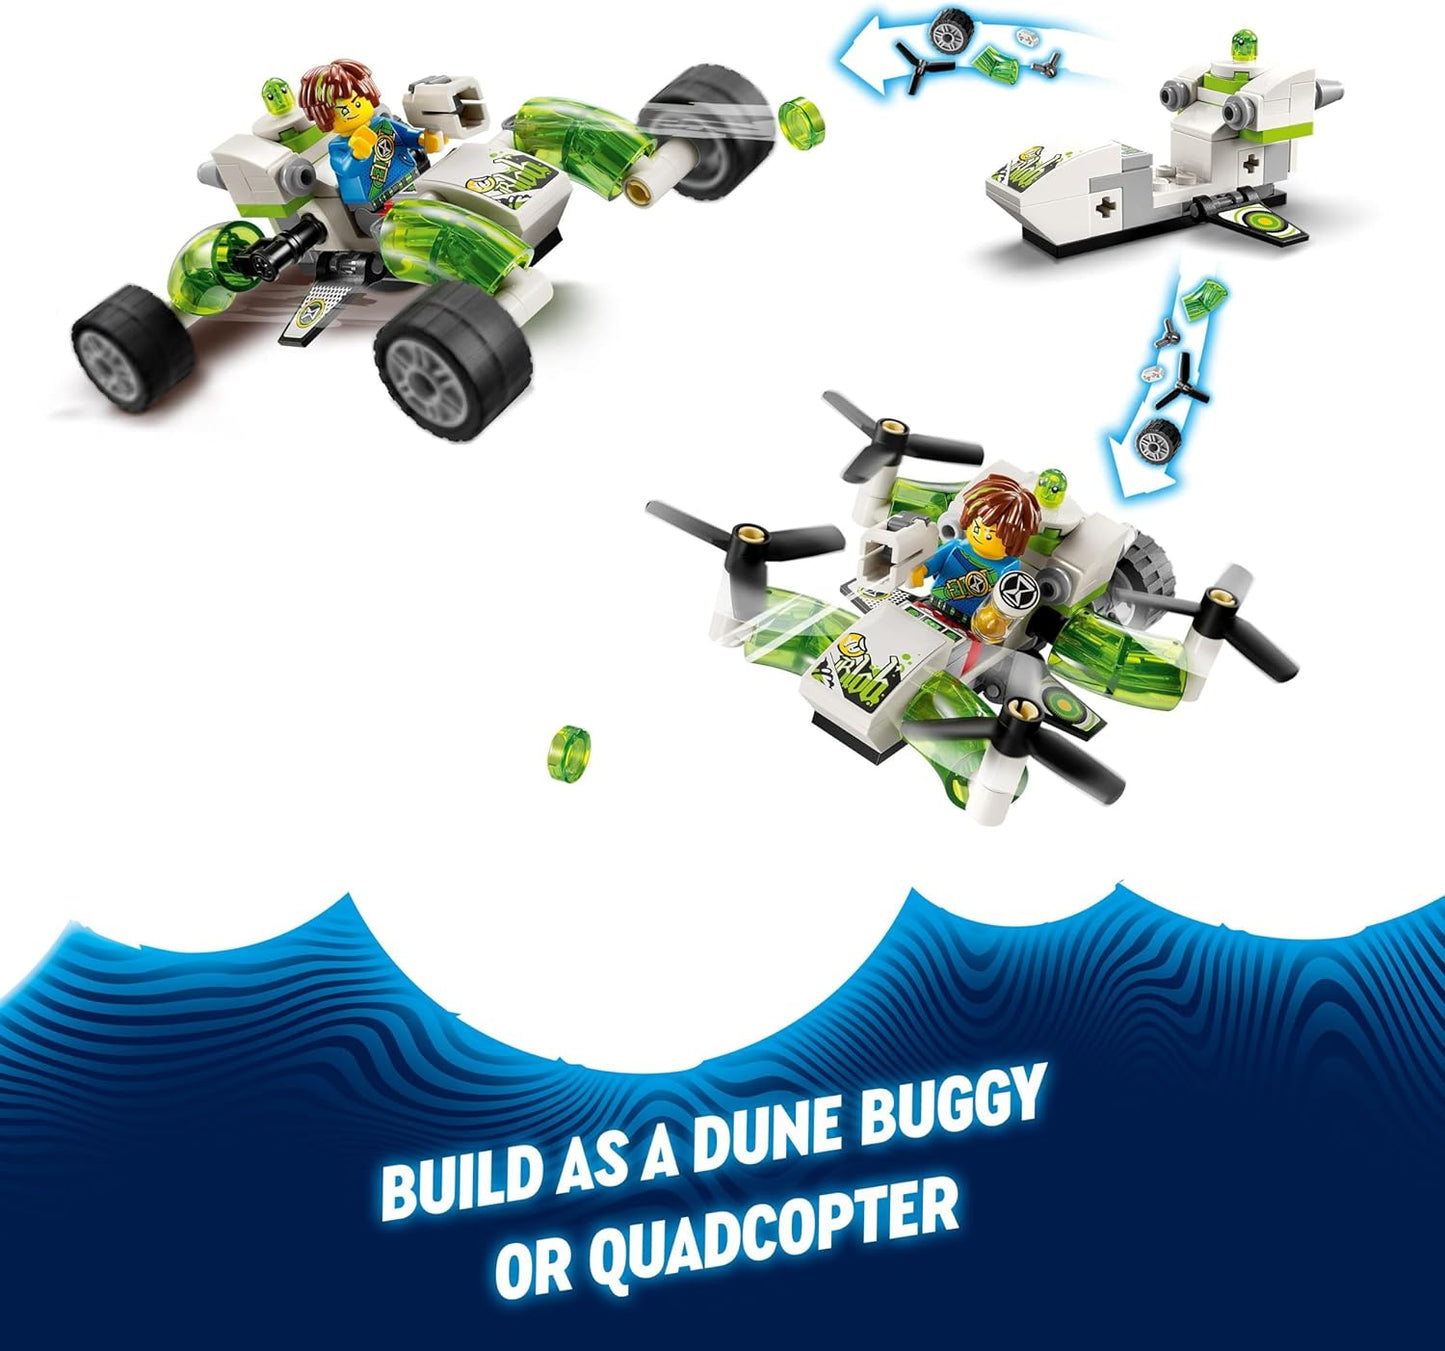 LEGO DREAMZzz Brinquedo de carro off-road de Mateo, conjunto de modelo de veículo para crianças, meninos e meninas construir um buggy ou helicóptero, inclui Mateo uma minifigura mais Z-Blob, brinquedos de construção colecionáveis 71471